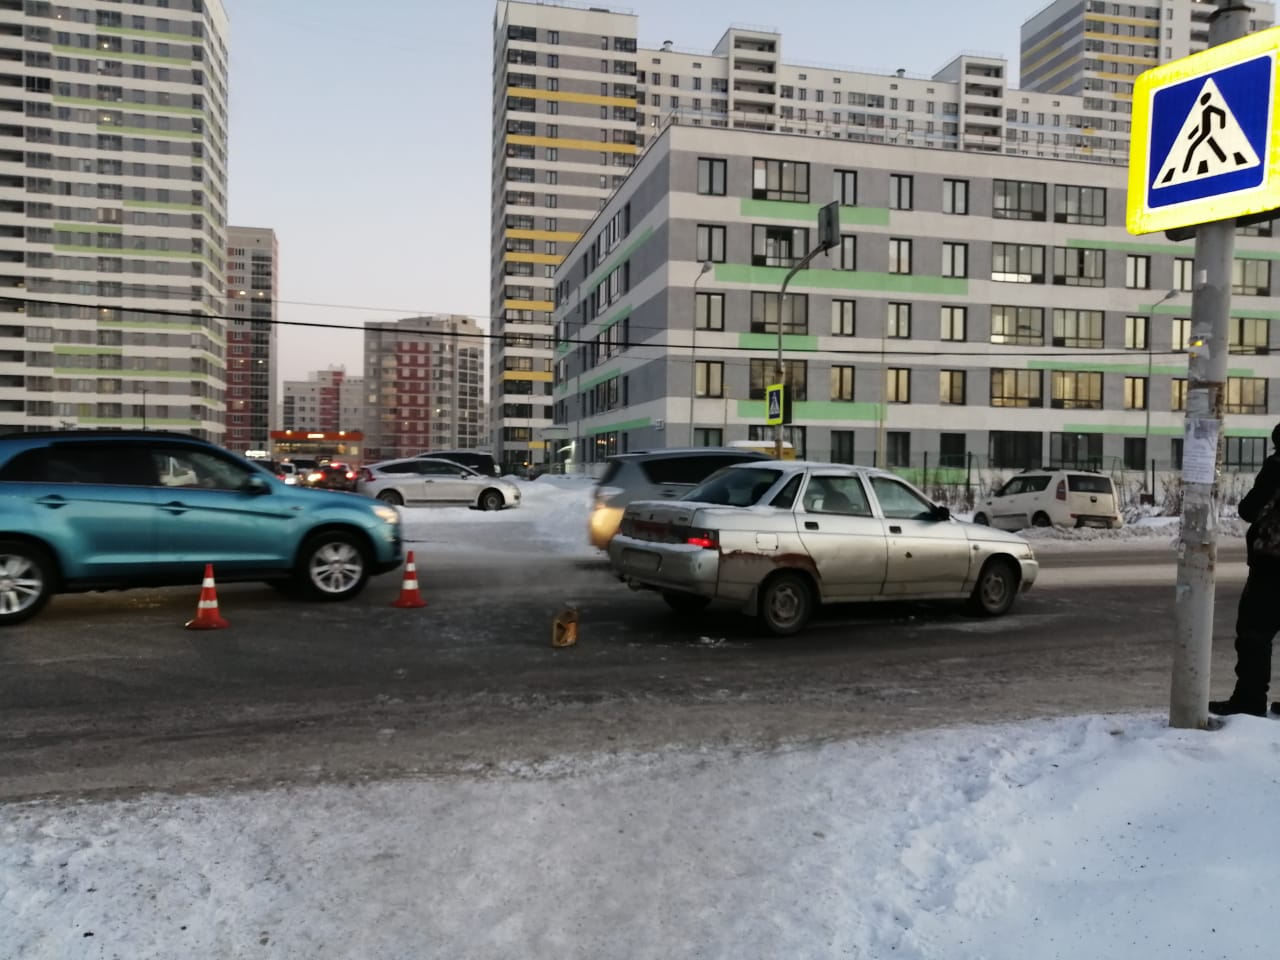 В Екатеринбурге водитель «десятки» сбил шестилетнюю девочку, которая переходила дорогу с отцом